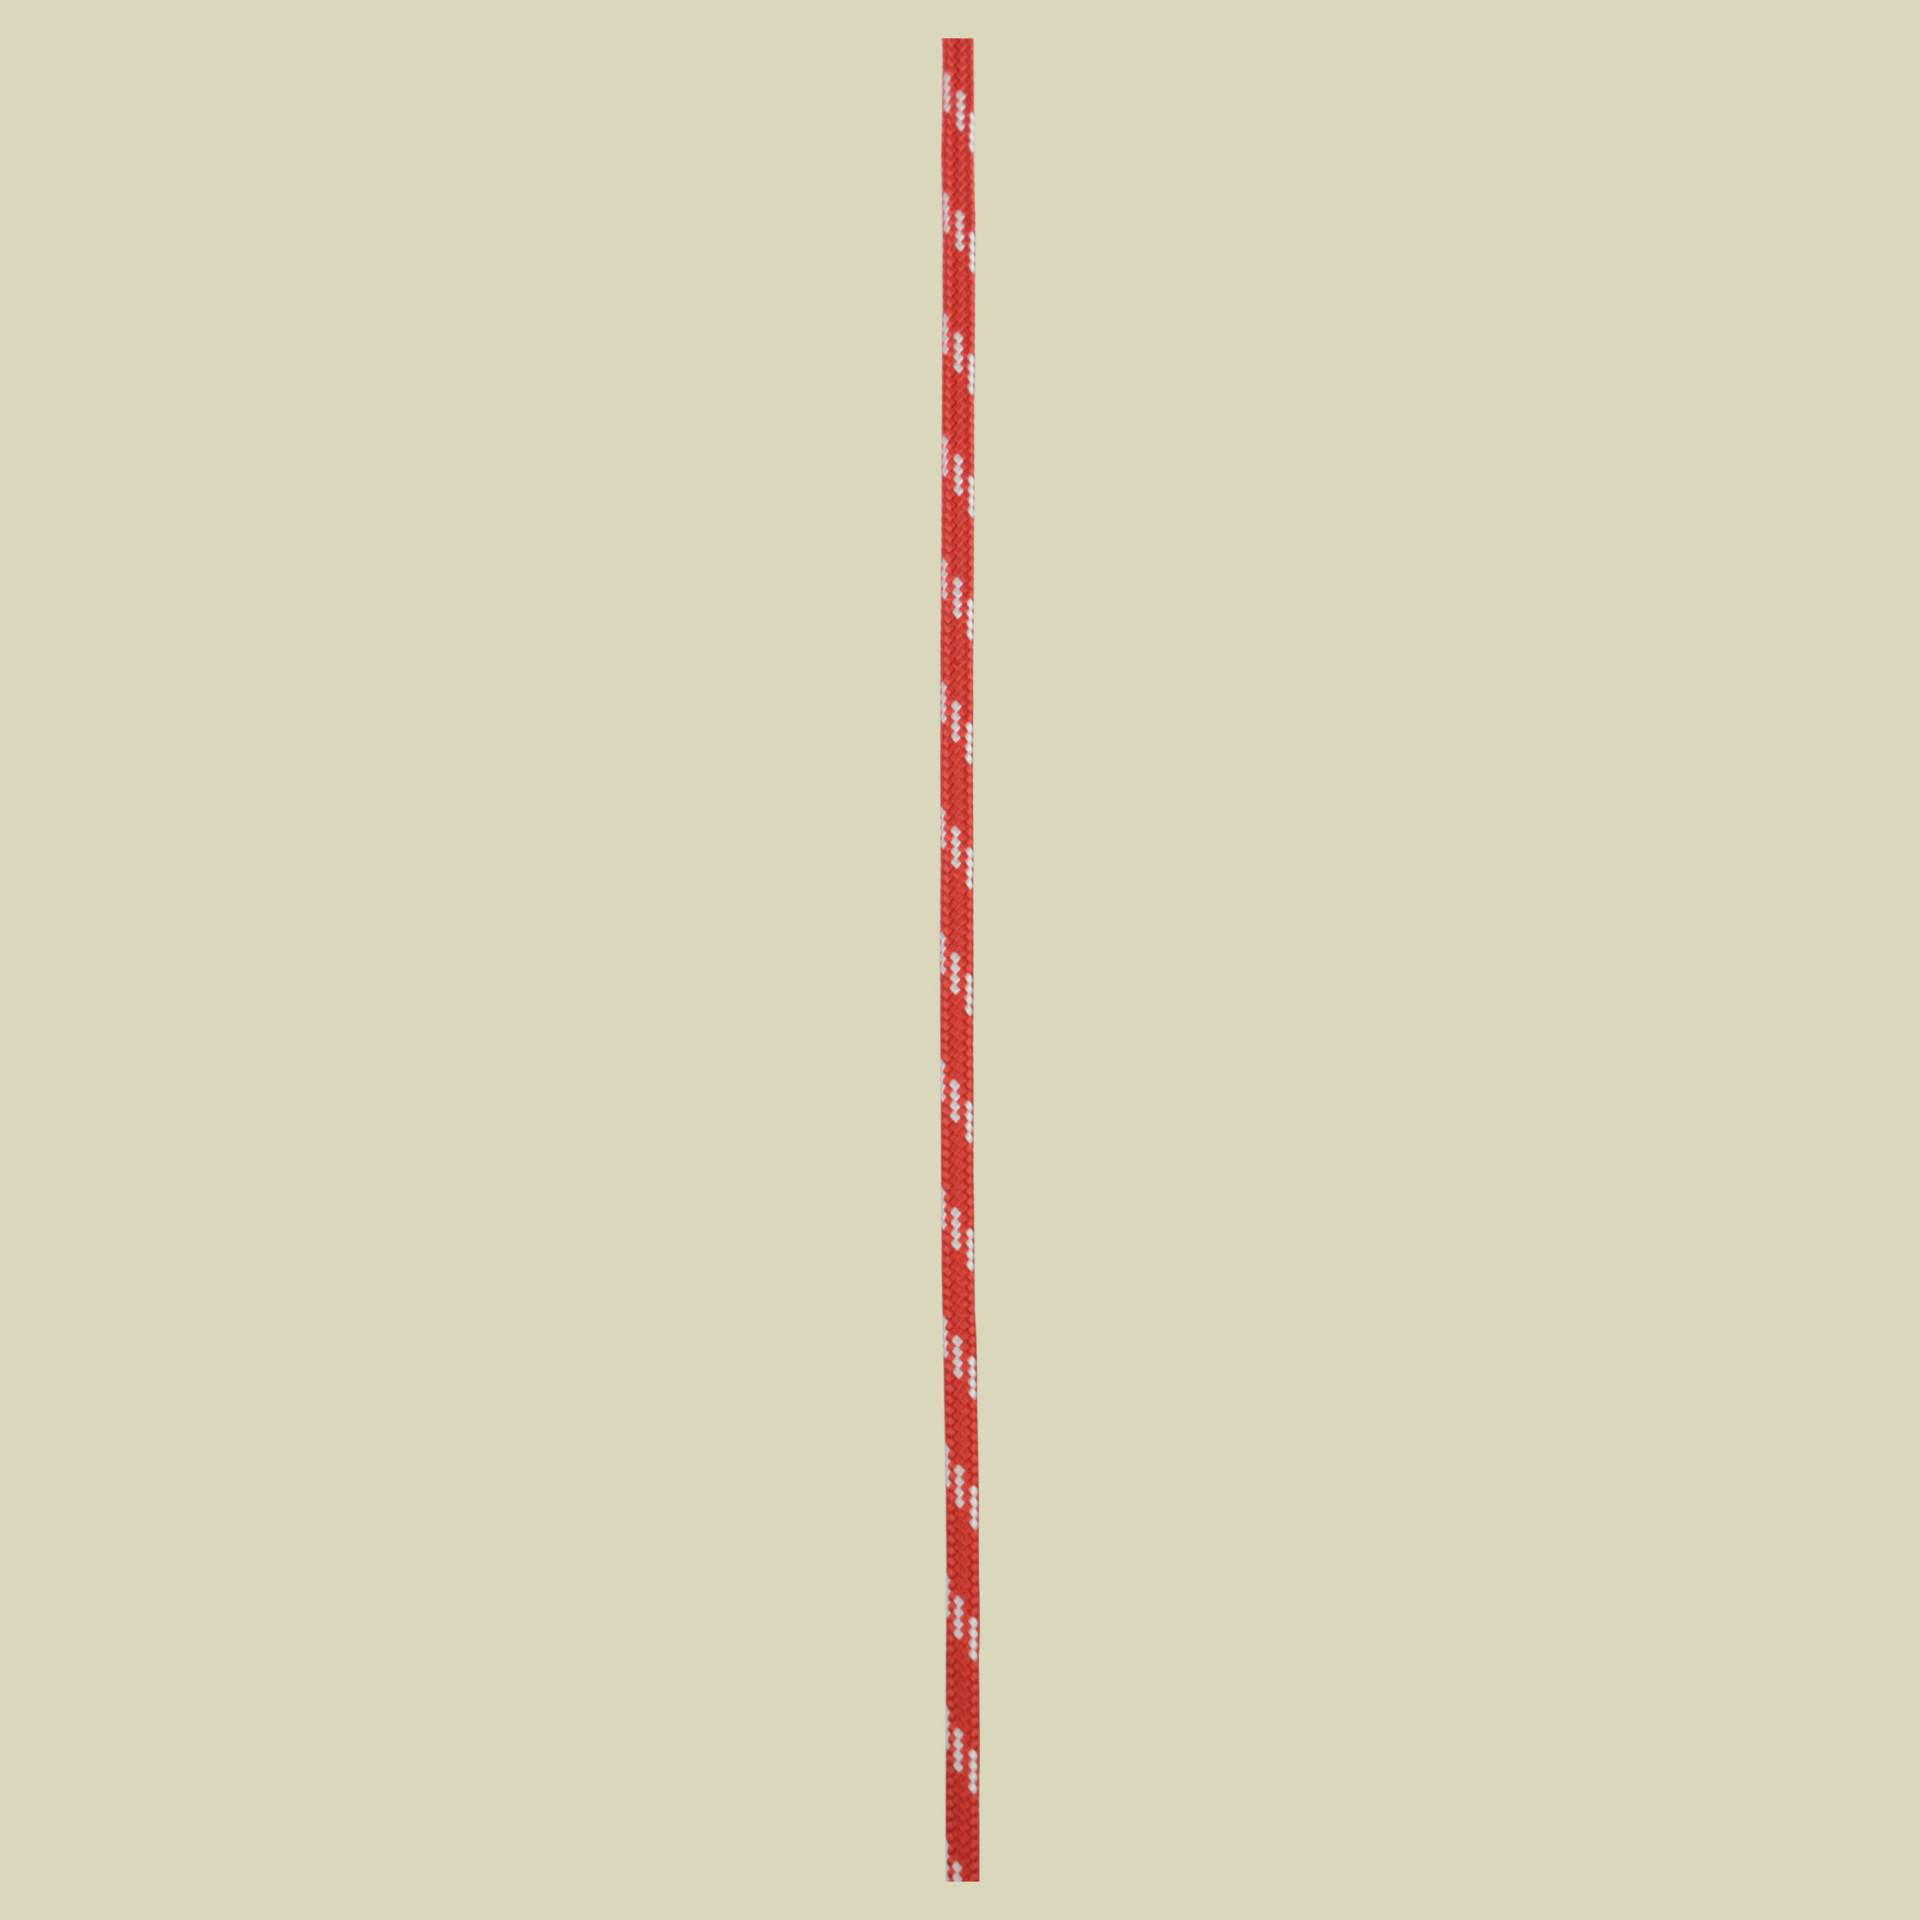 PES Cord Durchmesser 5 mm Farbe red von Edelrid